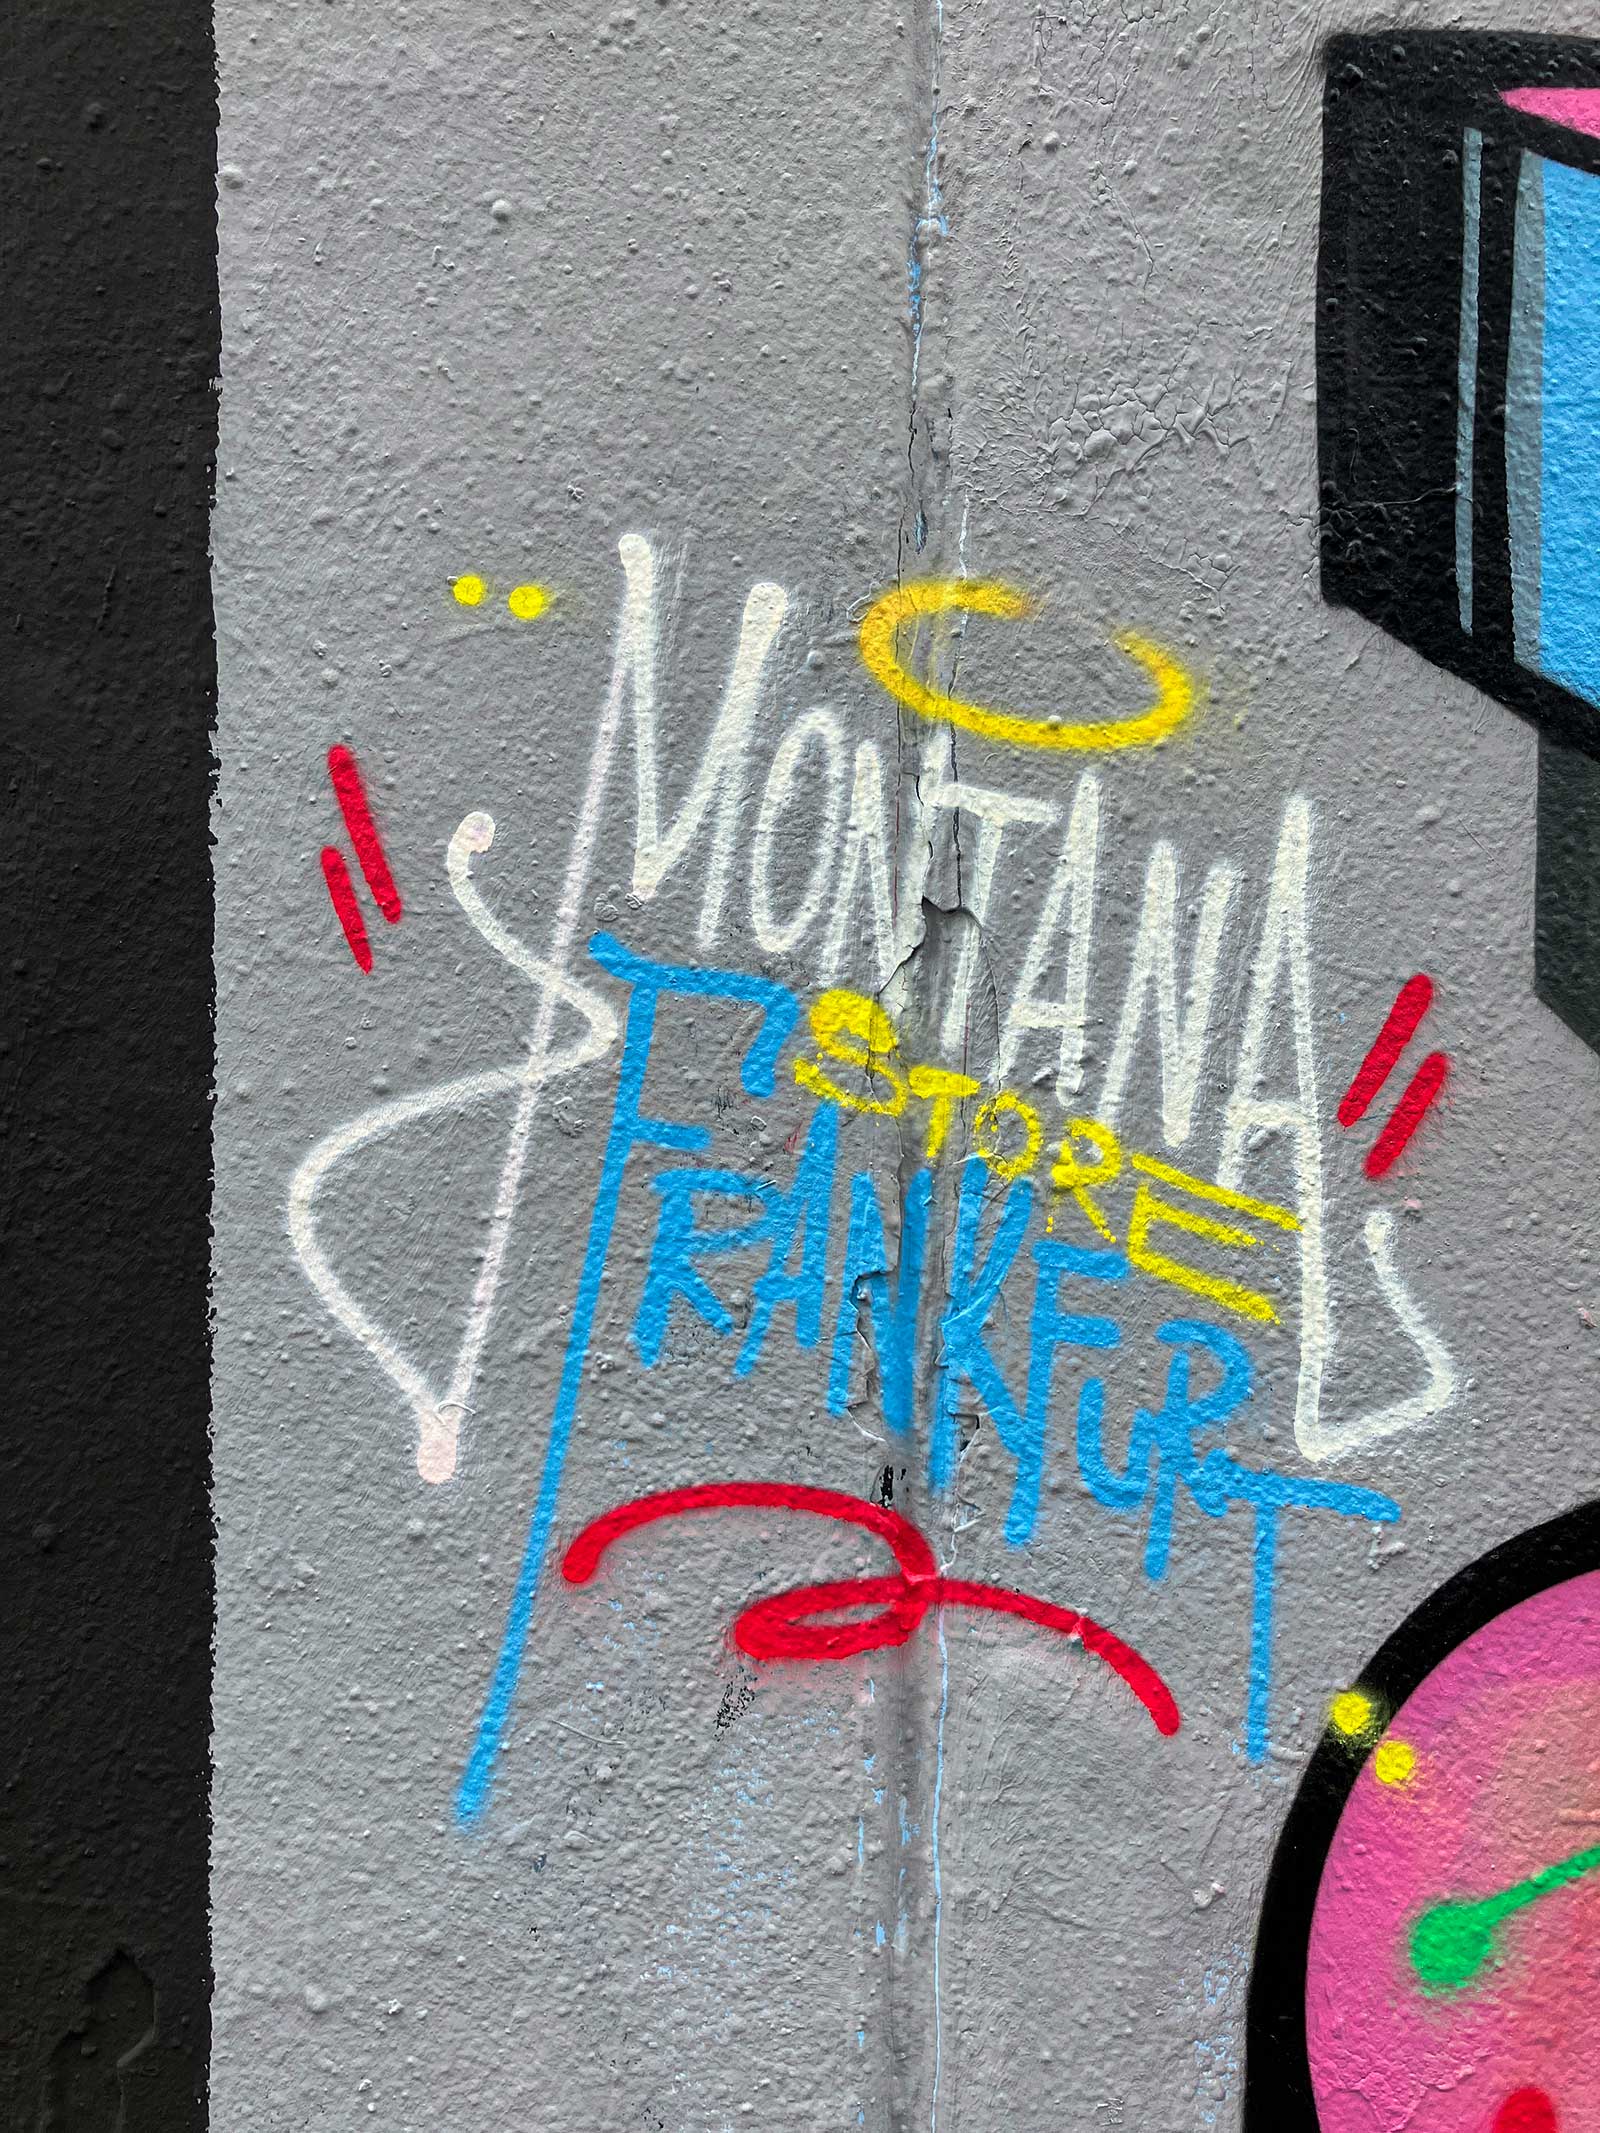 One Year Montana Store Frankfurt